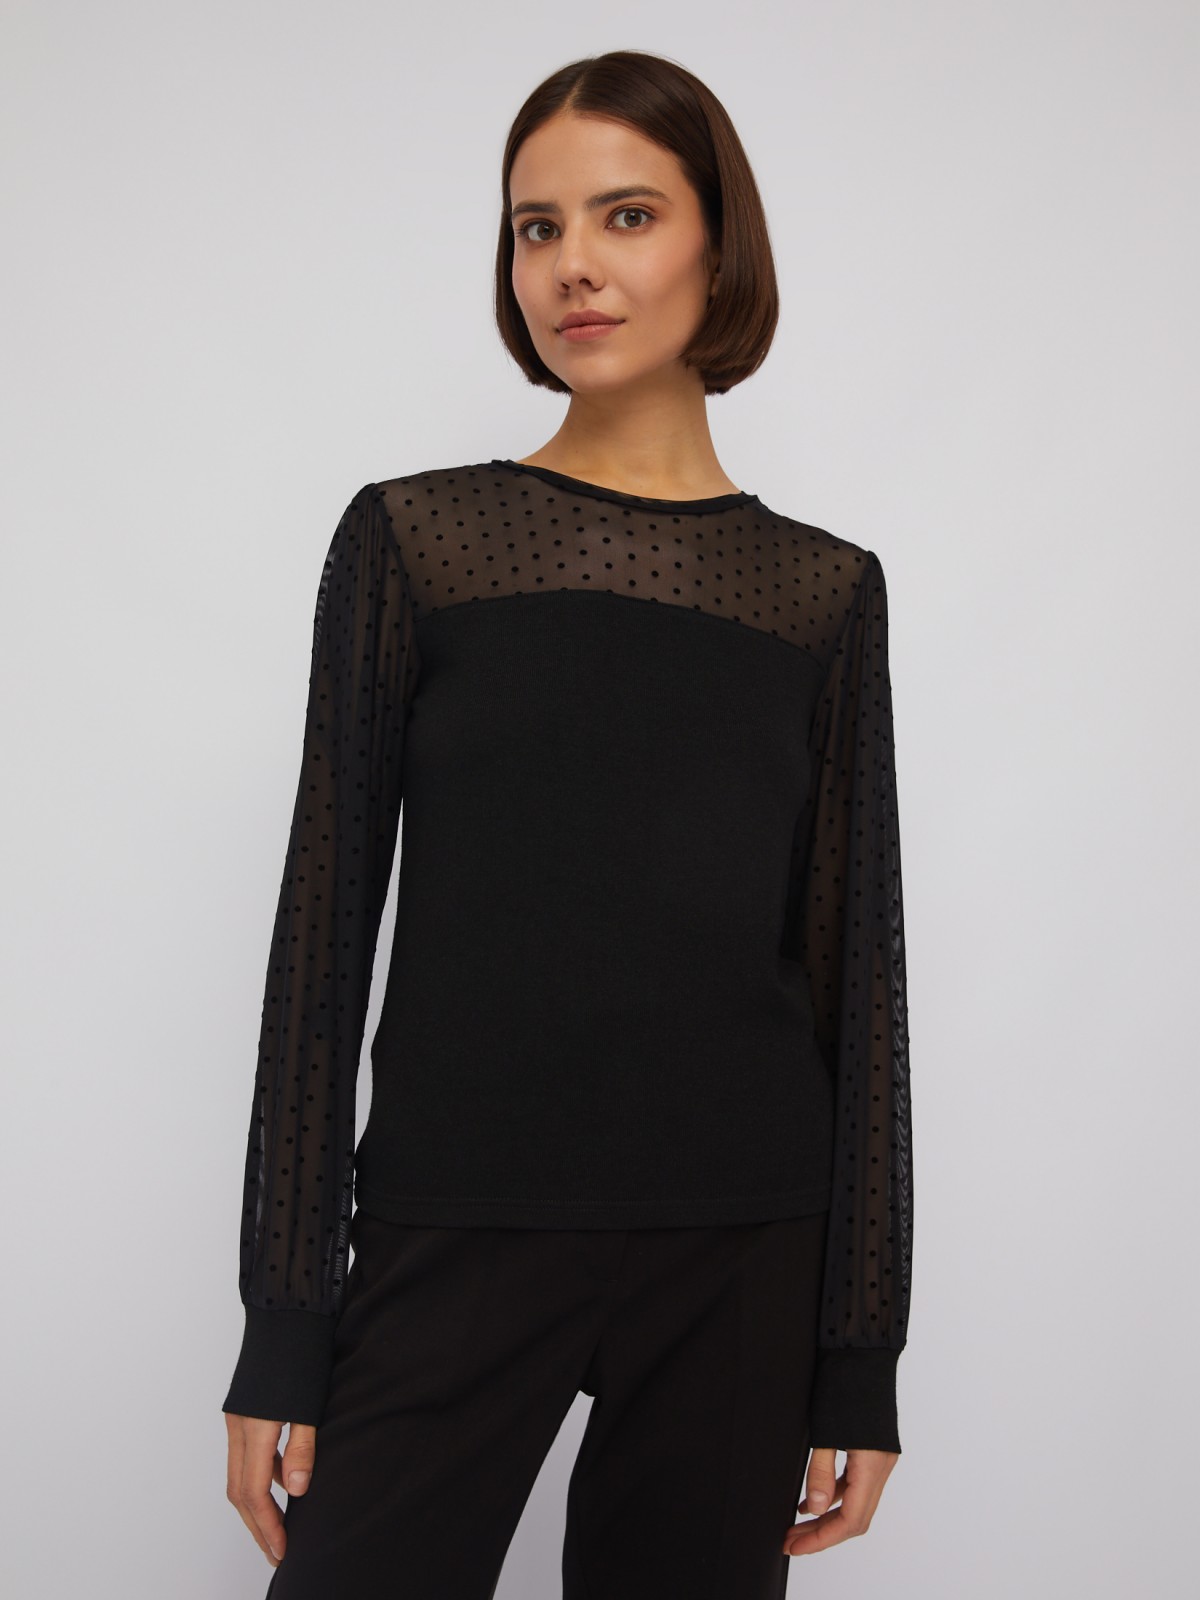 Трикотажный топ-блузка с акцентом на кокетке и рукавах zolla 024113159083, цвет черный, размер XS - фото 4